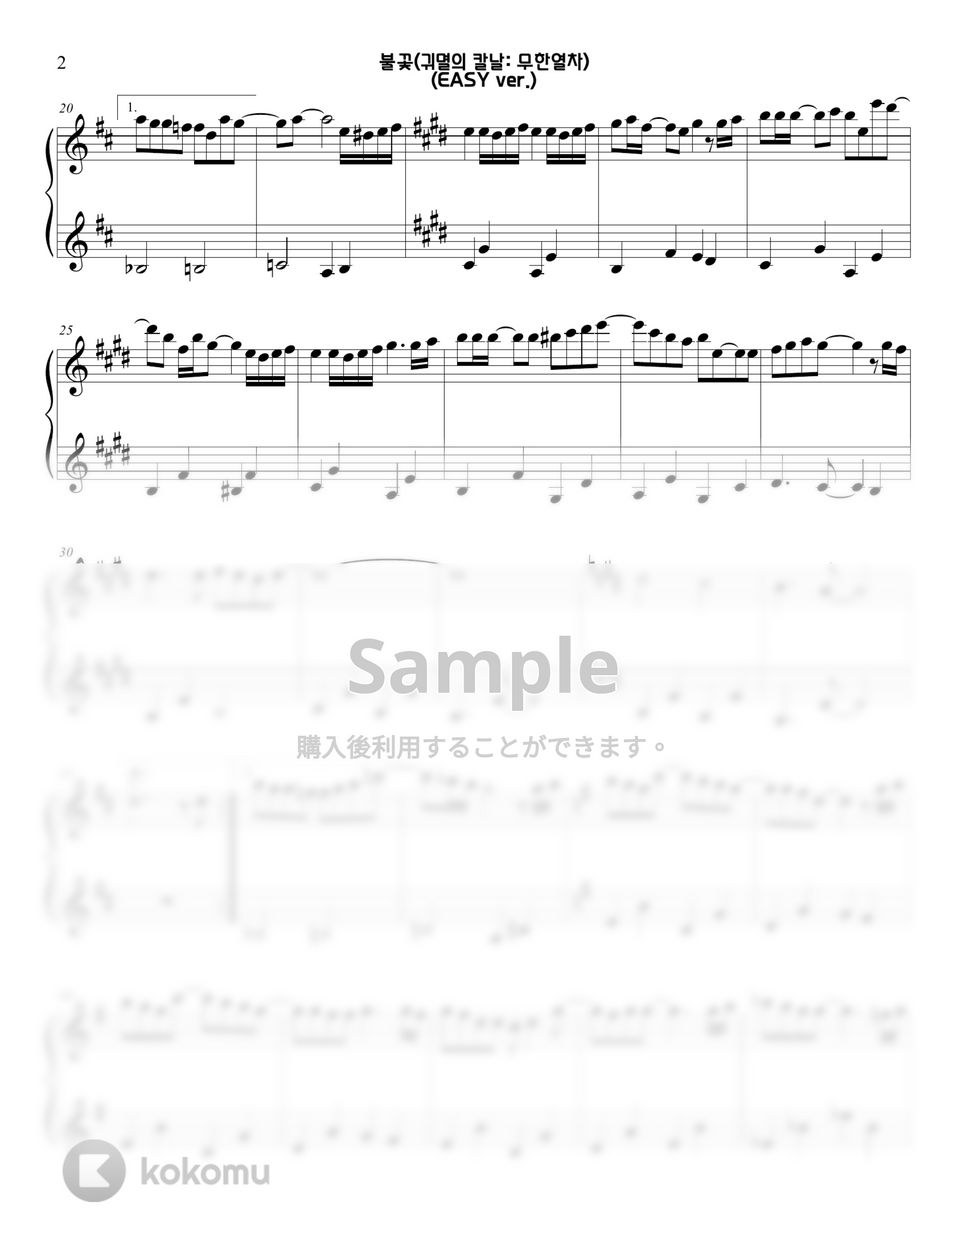 劇場版『鬼滅の刃無限列車編』 - 炎 (EASY ver.) by Sunny Fingers Piano